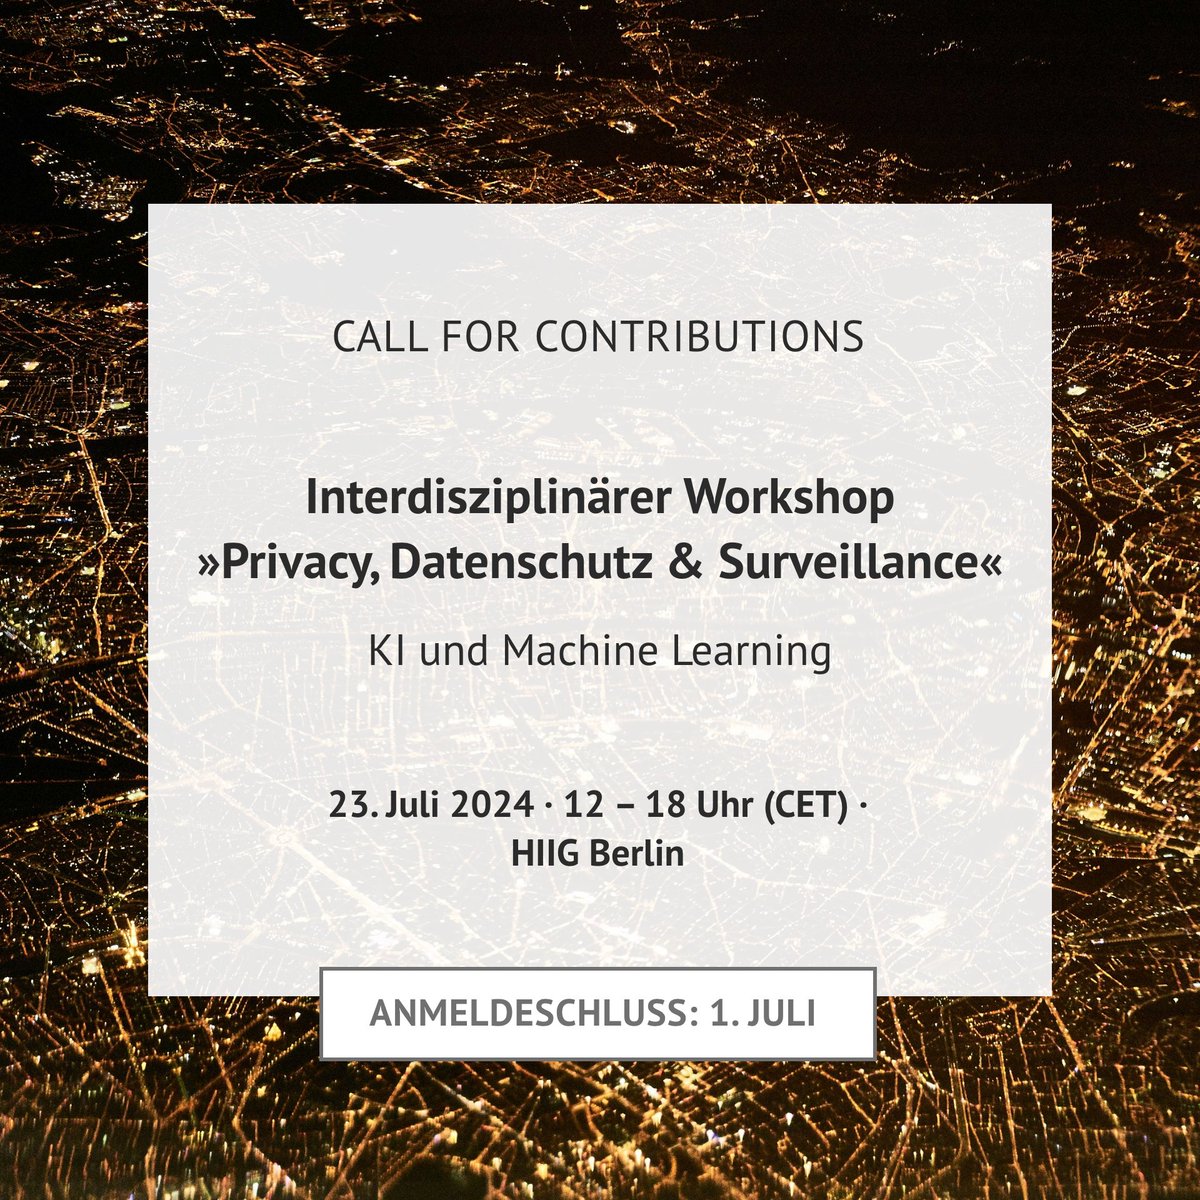 Call for Contributions! Am 23.7 können Forscher*innen in einem Workshop ihre aktuellen Arbeiten im Bereich #Privacy, #Datenschutz & #Surveillance vorstellen und mit Fokus auf #KI und #MachineLearning in interdisziplinärer Runde diskutieren. Anmeldung👉 hiig.de/events/xvii-in…